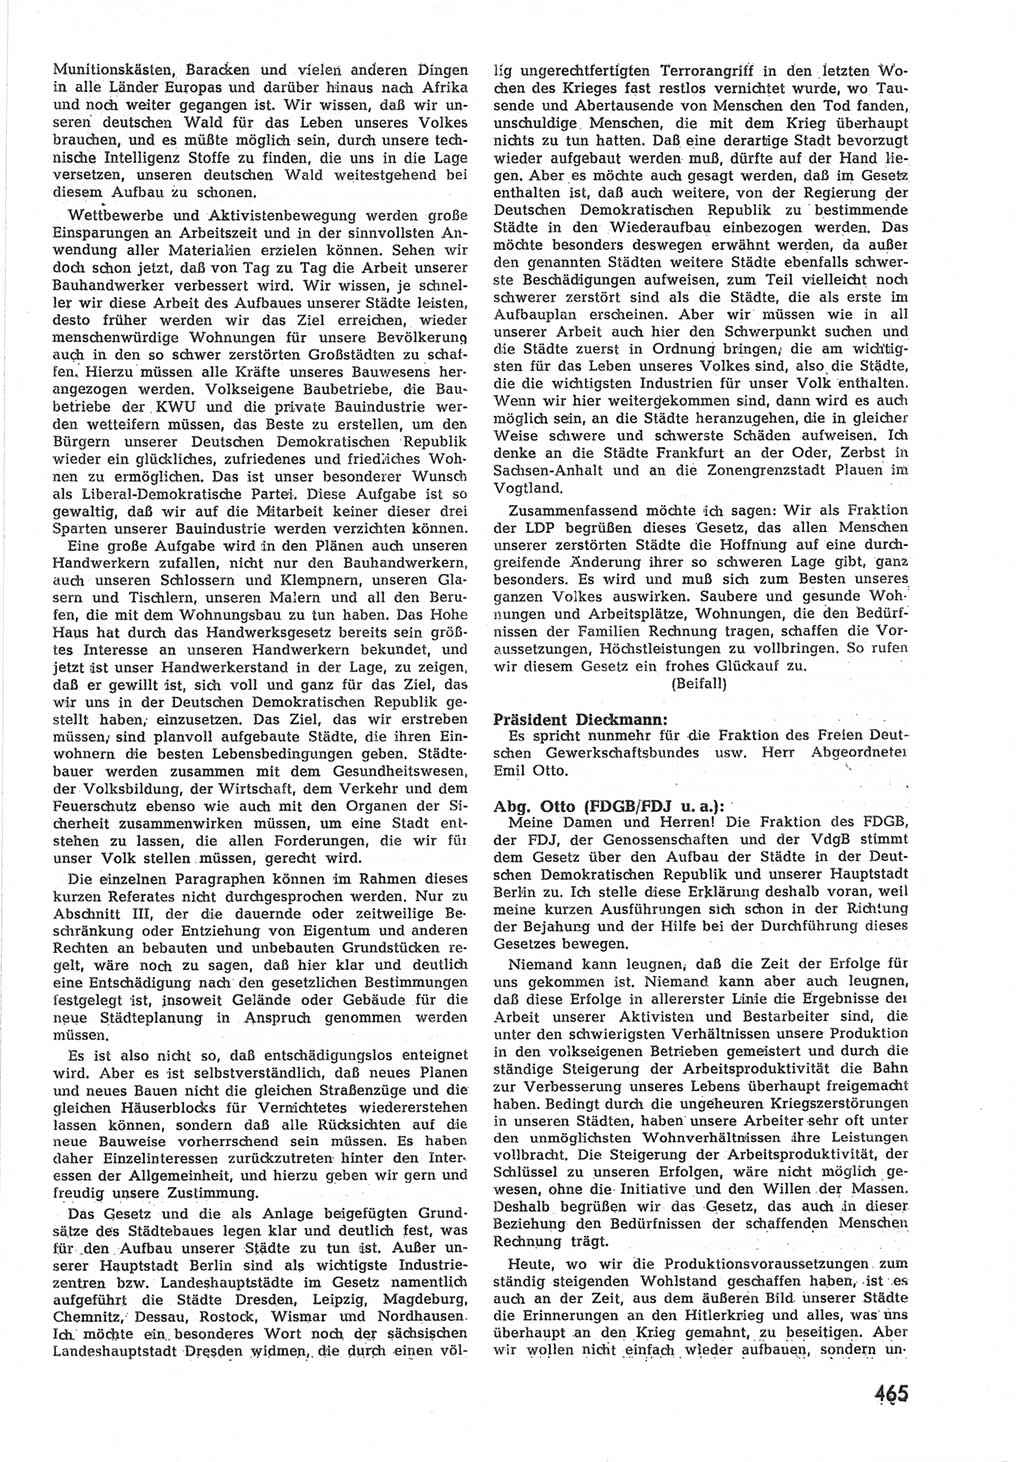 Provisorische Volkskammer (VK) der Deutschen Demokratischen Republik (DDR) 1949-1950, Dokument 483 (Prov. VK DDR 1949-1950, Dok. 483)